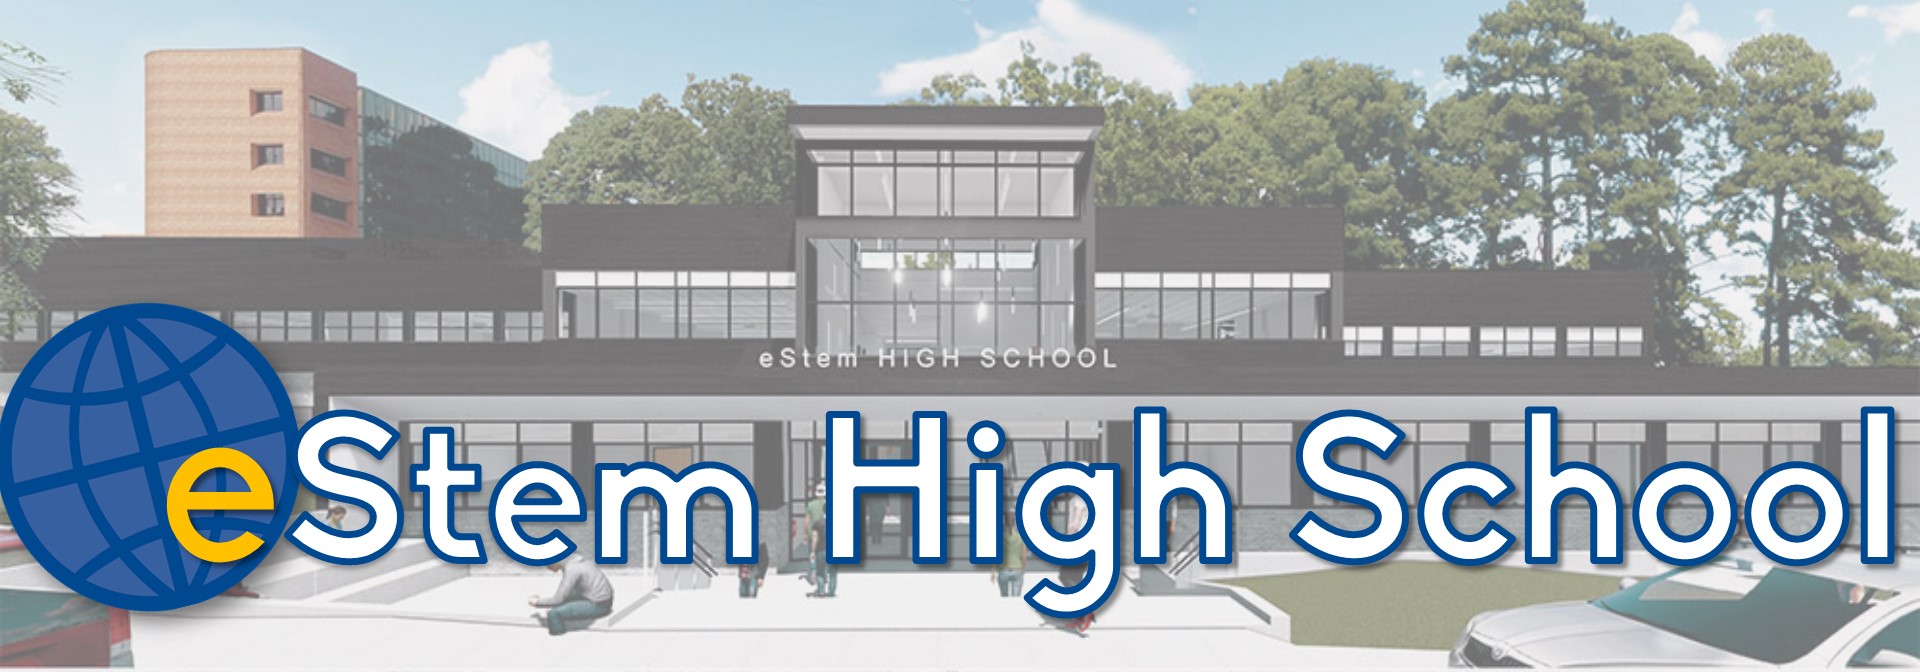 eStem High School